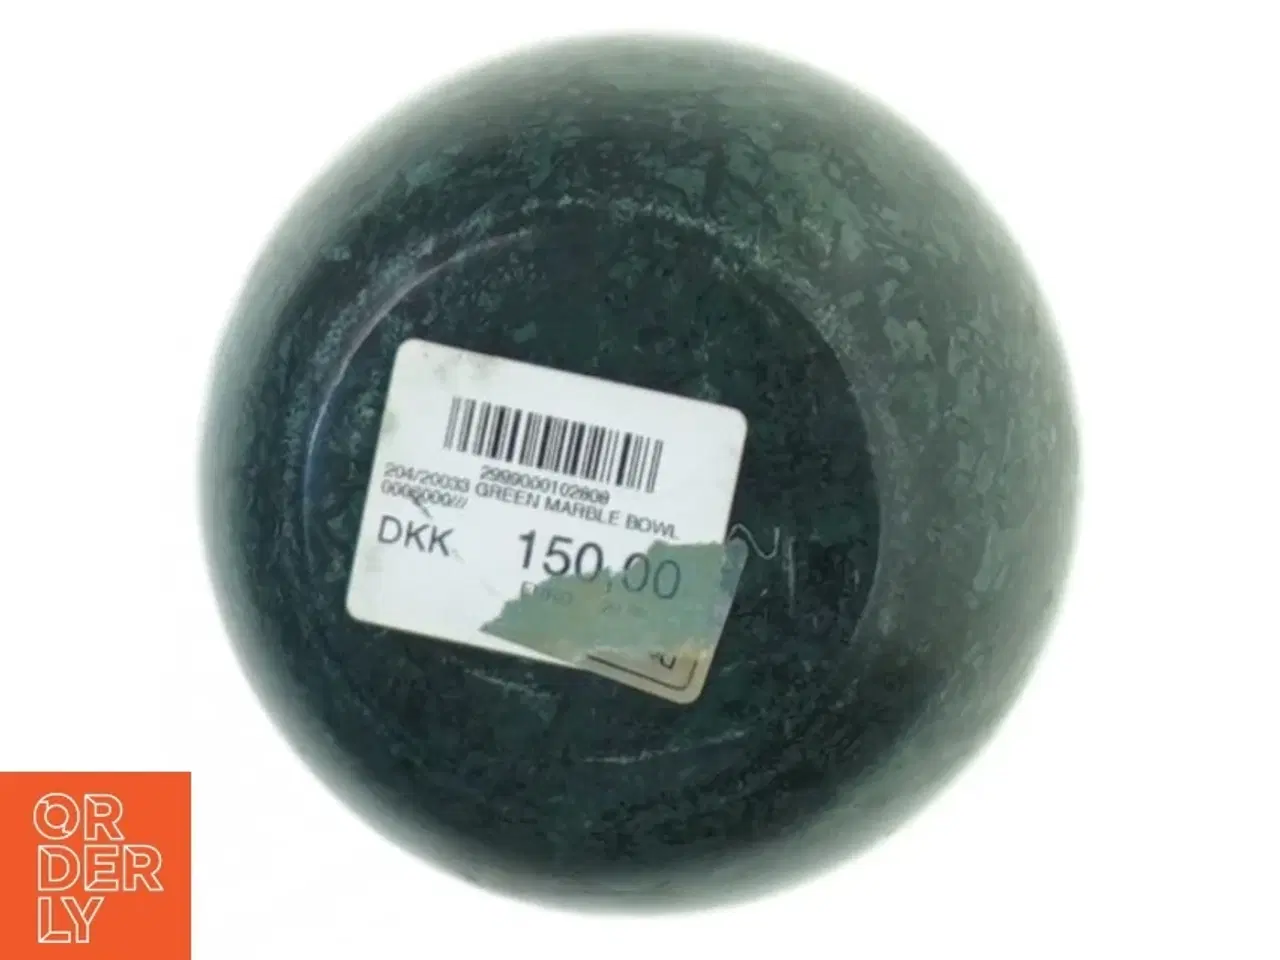 Billede 2 - Green marble bowl (str. 10 x 4 cm)